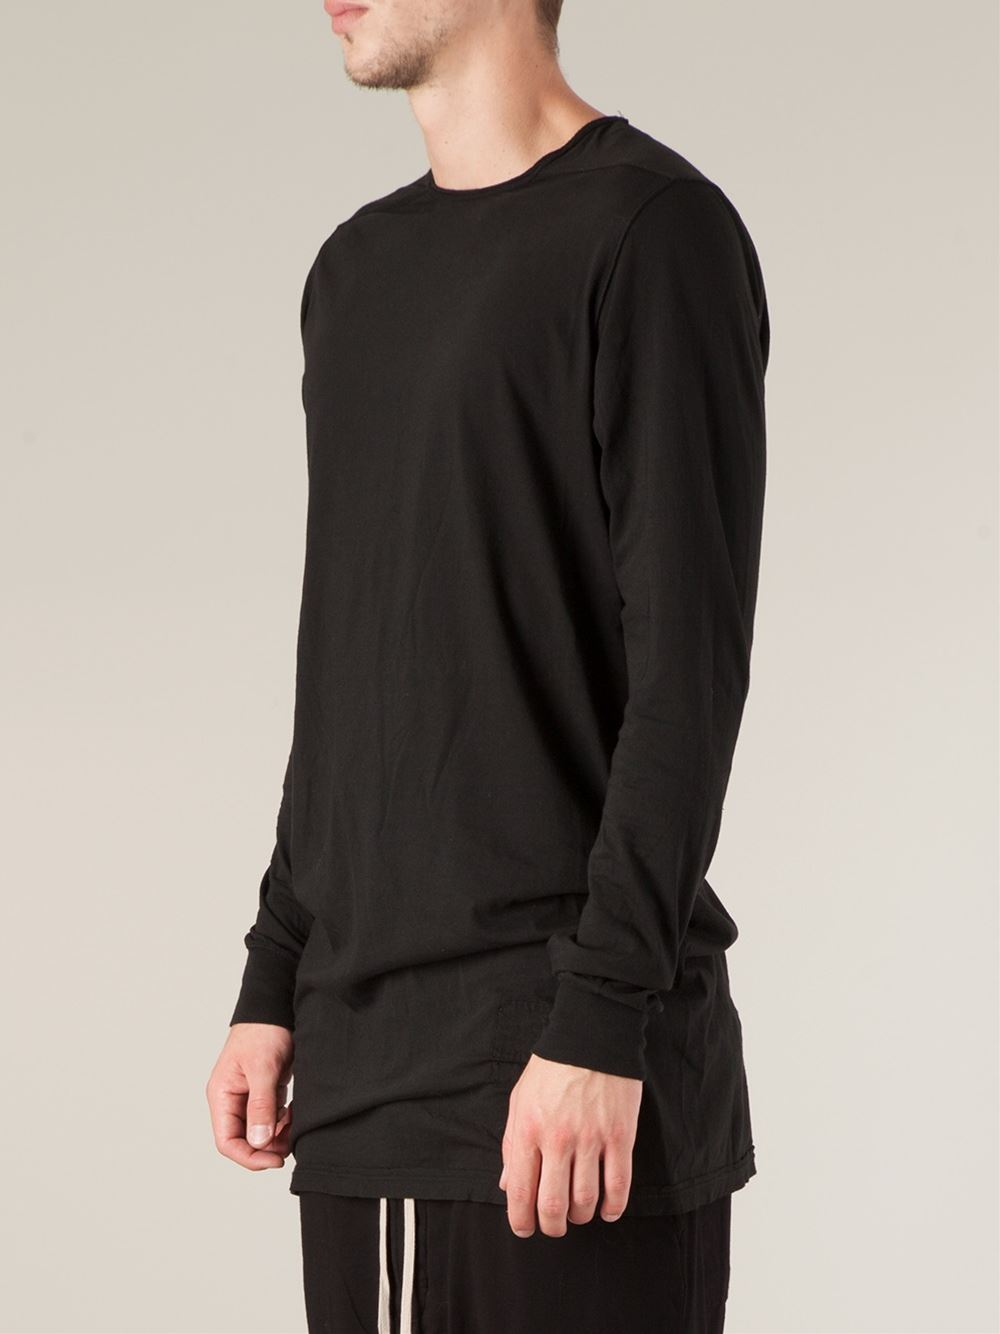 Rick Owens Drkshdw Oversized Long Sleeve T-shirt in Black for Men - Lyst